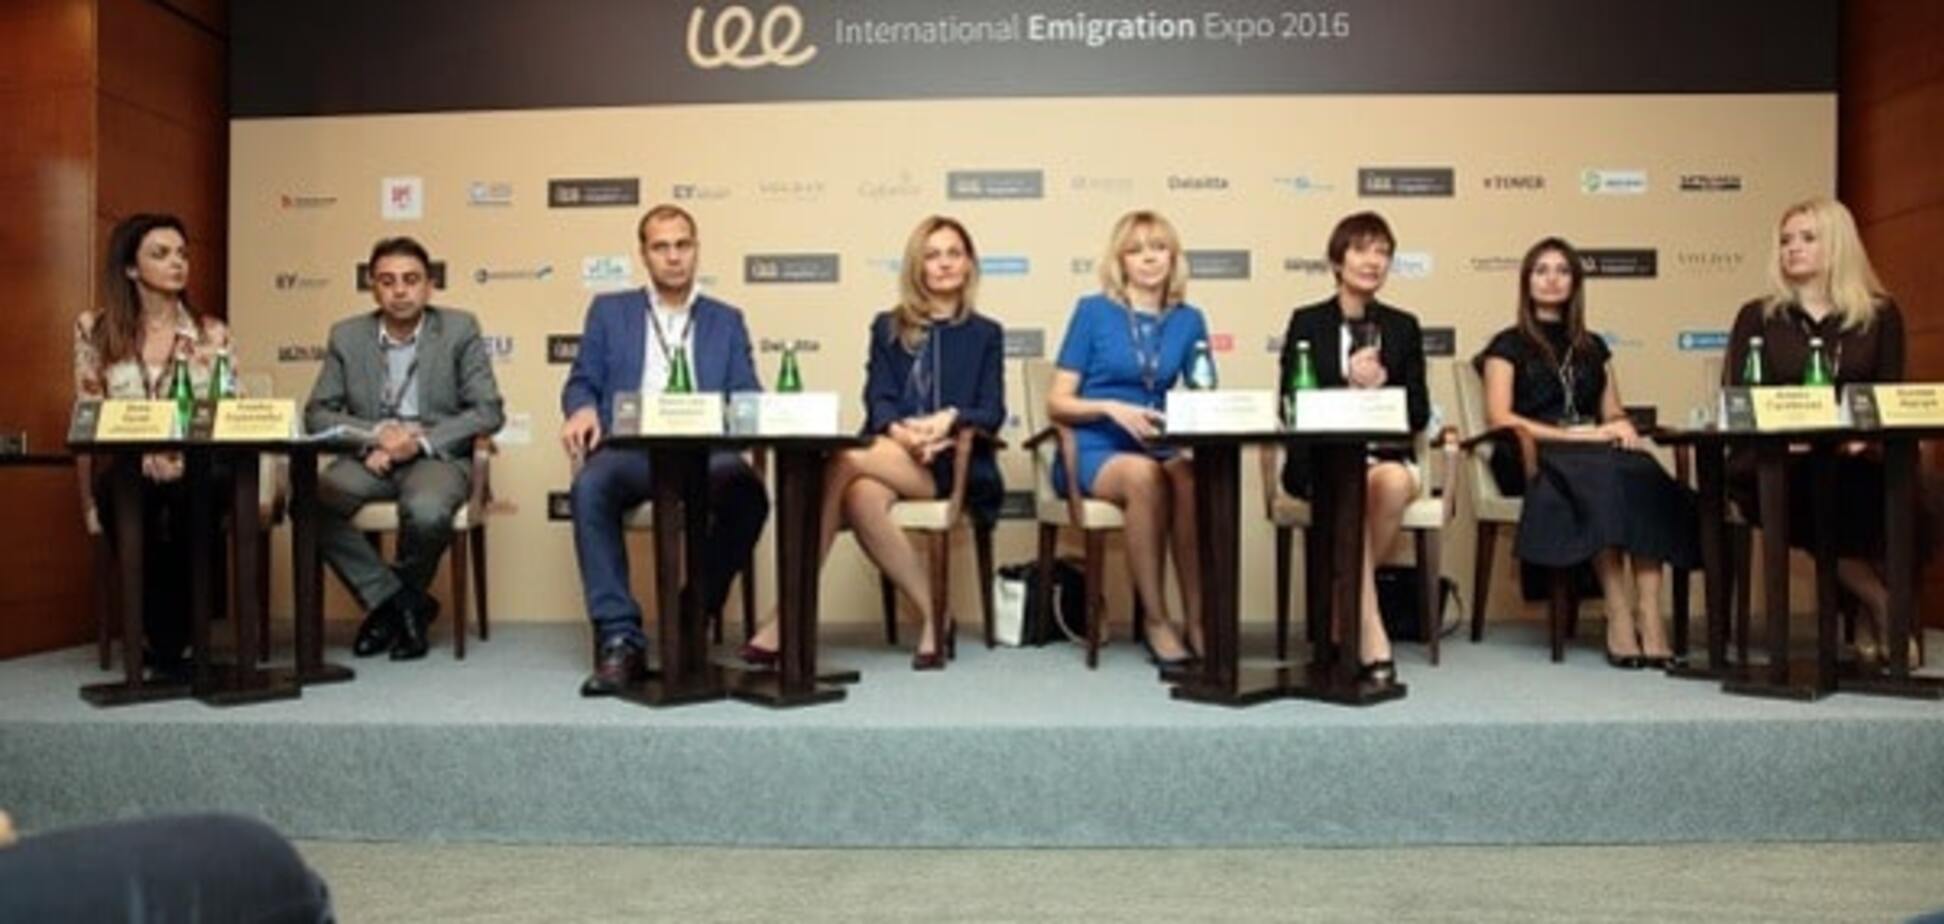 Международная выставка-конференция по эмиграции International Emigration Expo 2016